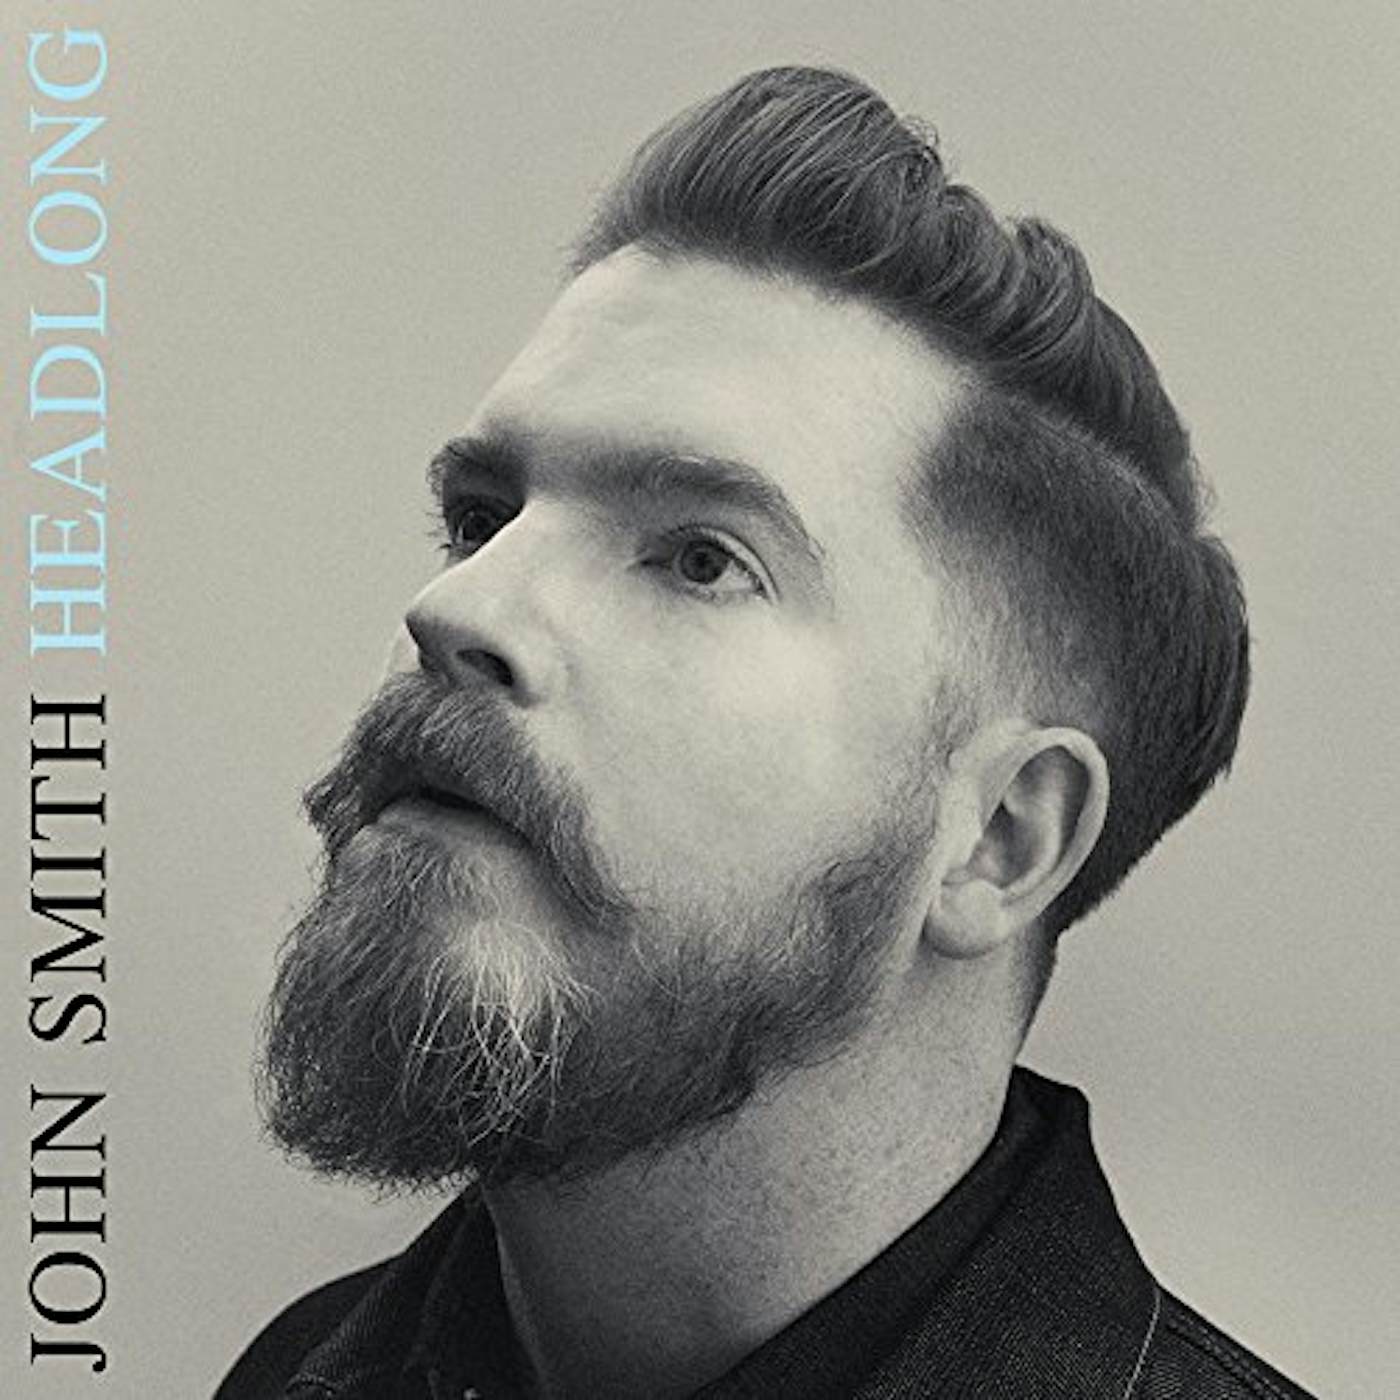 John Smith HEADLONG CD